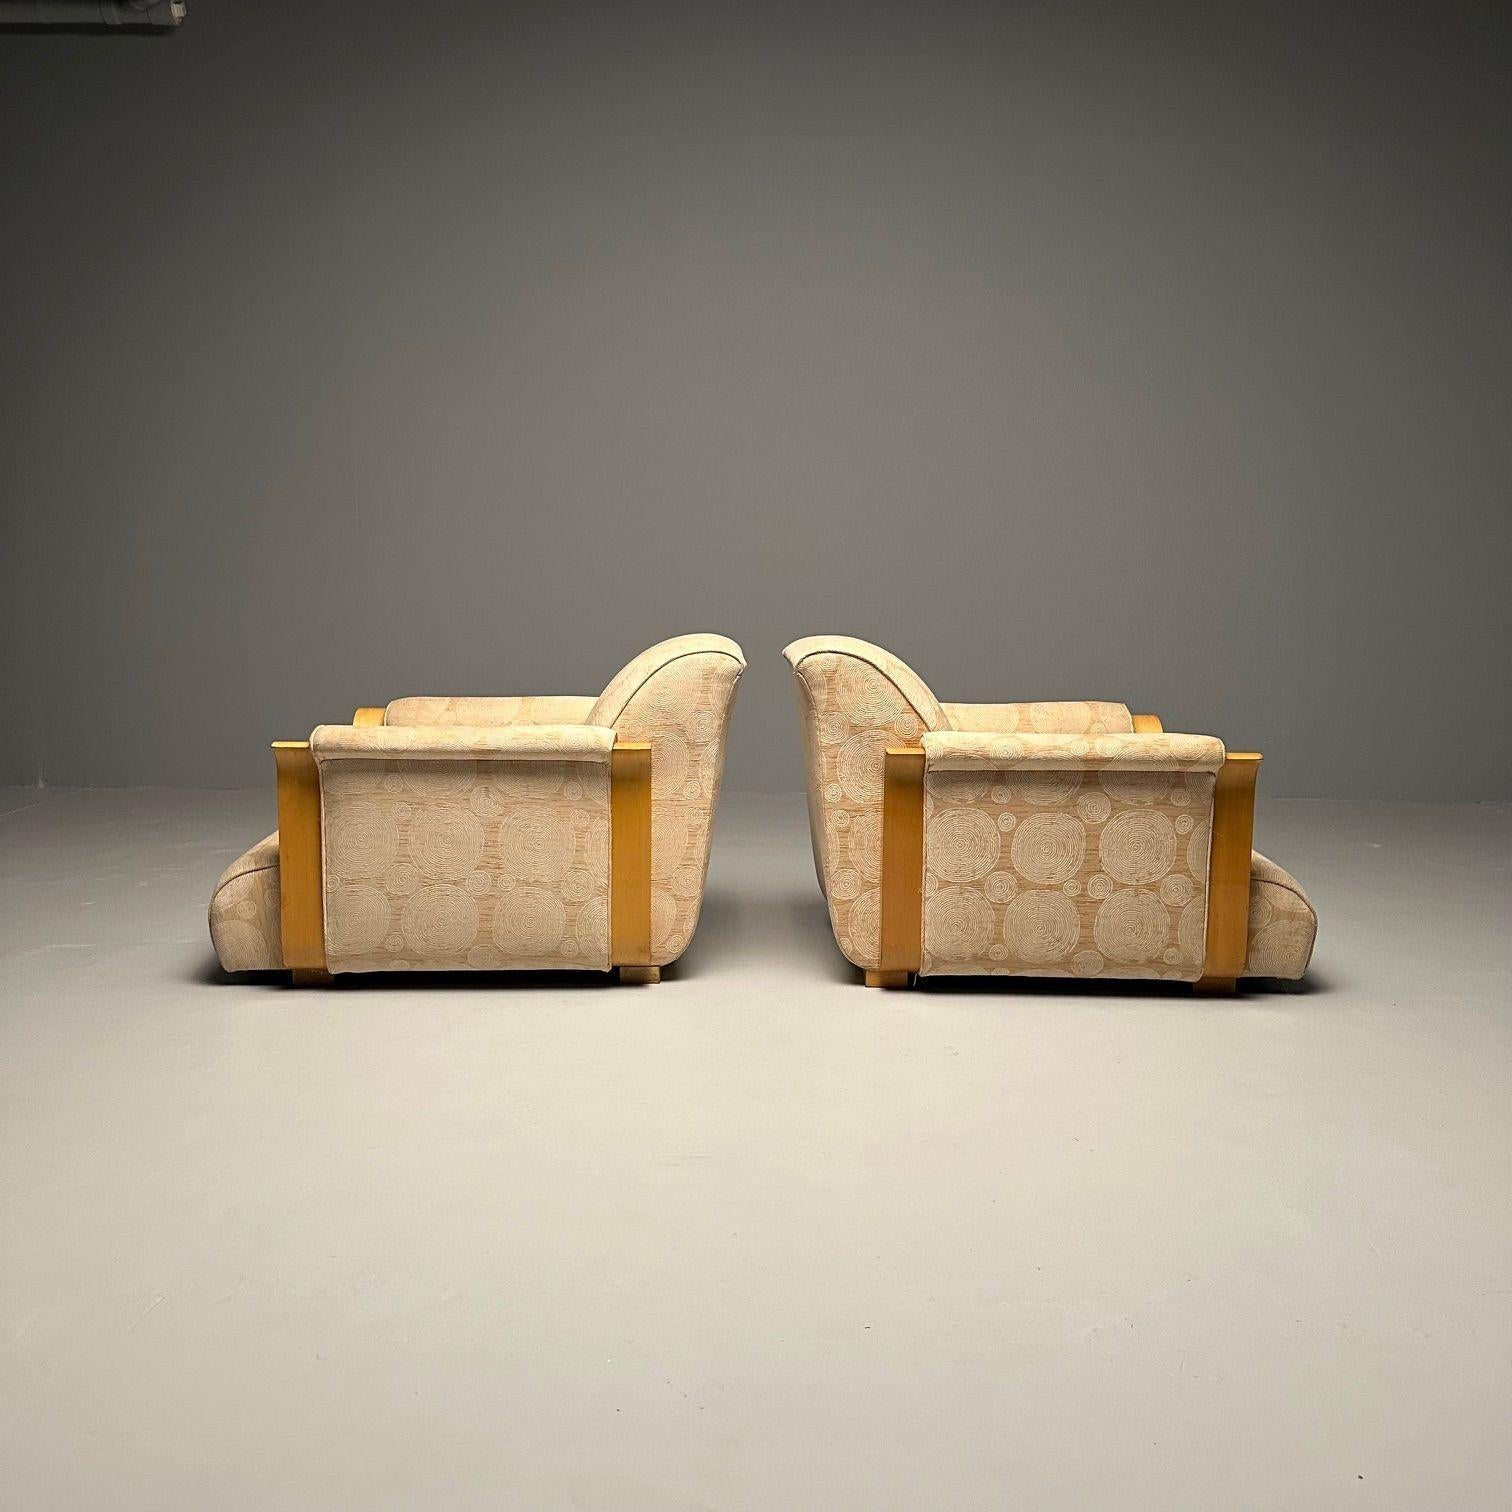 Seltenes Paar französischer Art-Déco-Sessel von Michel Dufet, Frankreich, 1930er Jahre
Zwei niedrige Art-déco-Sessel, entworfen von Michel Dufet in Frankreich, 1930er Jahre. 
Michel Dufet
Französisch (1888-1985)

Literatur:
Florence Camard,